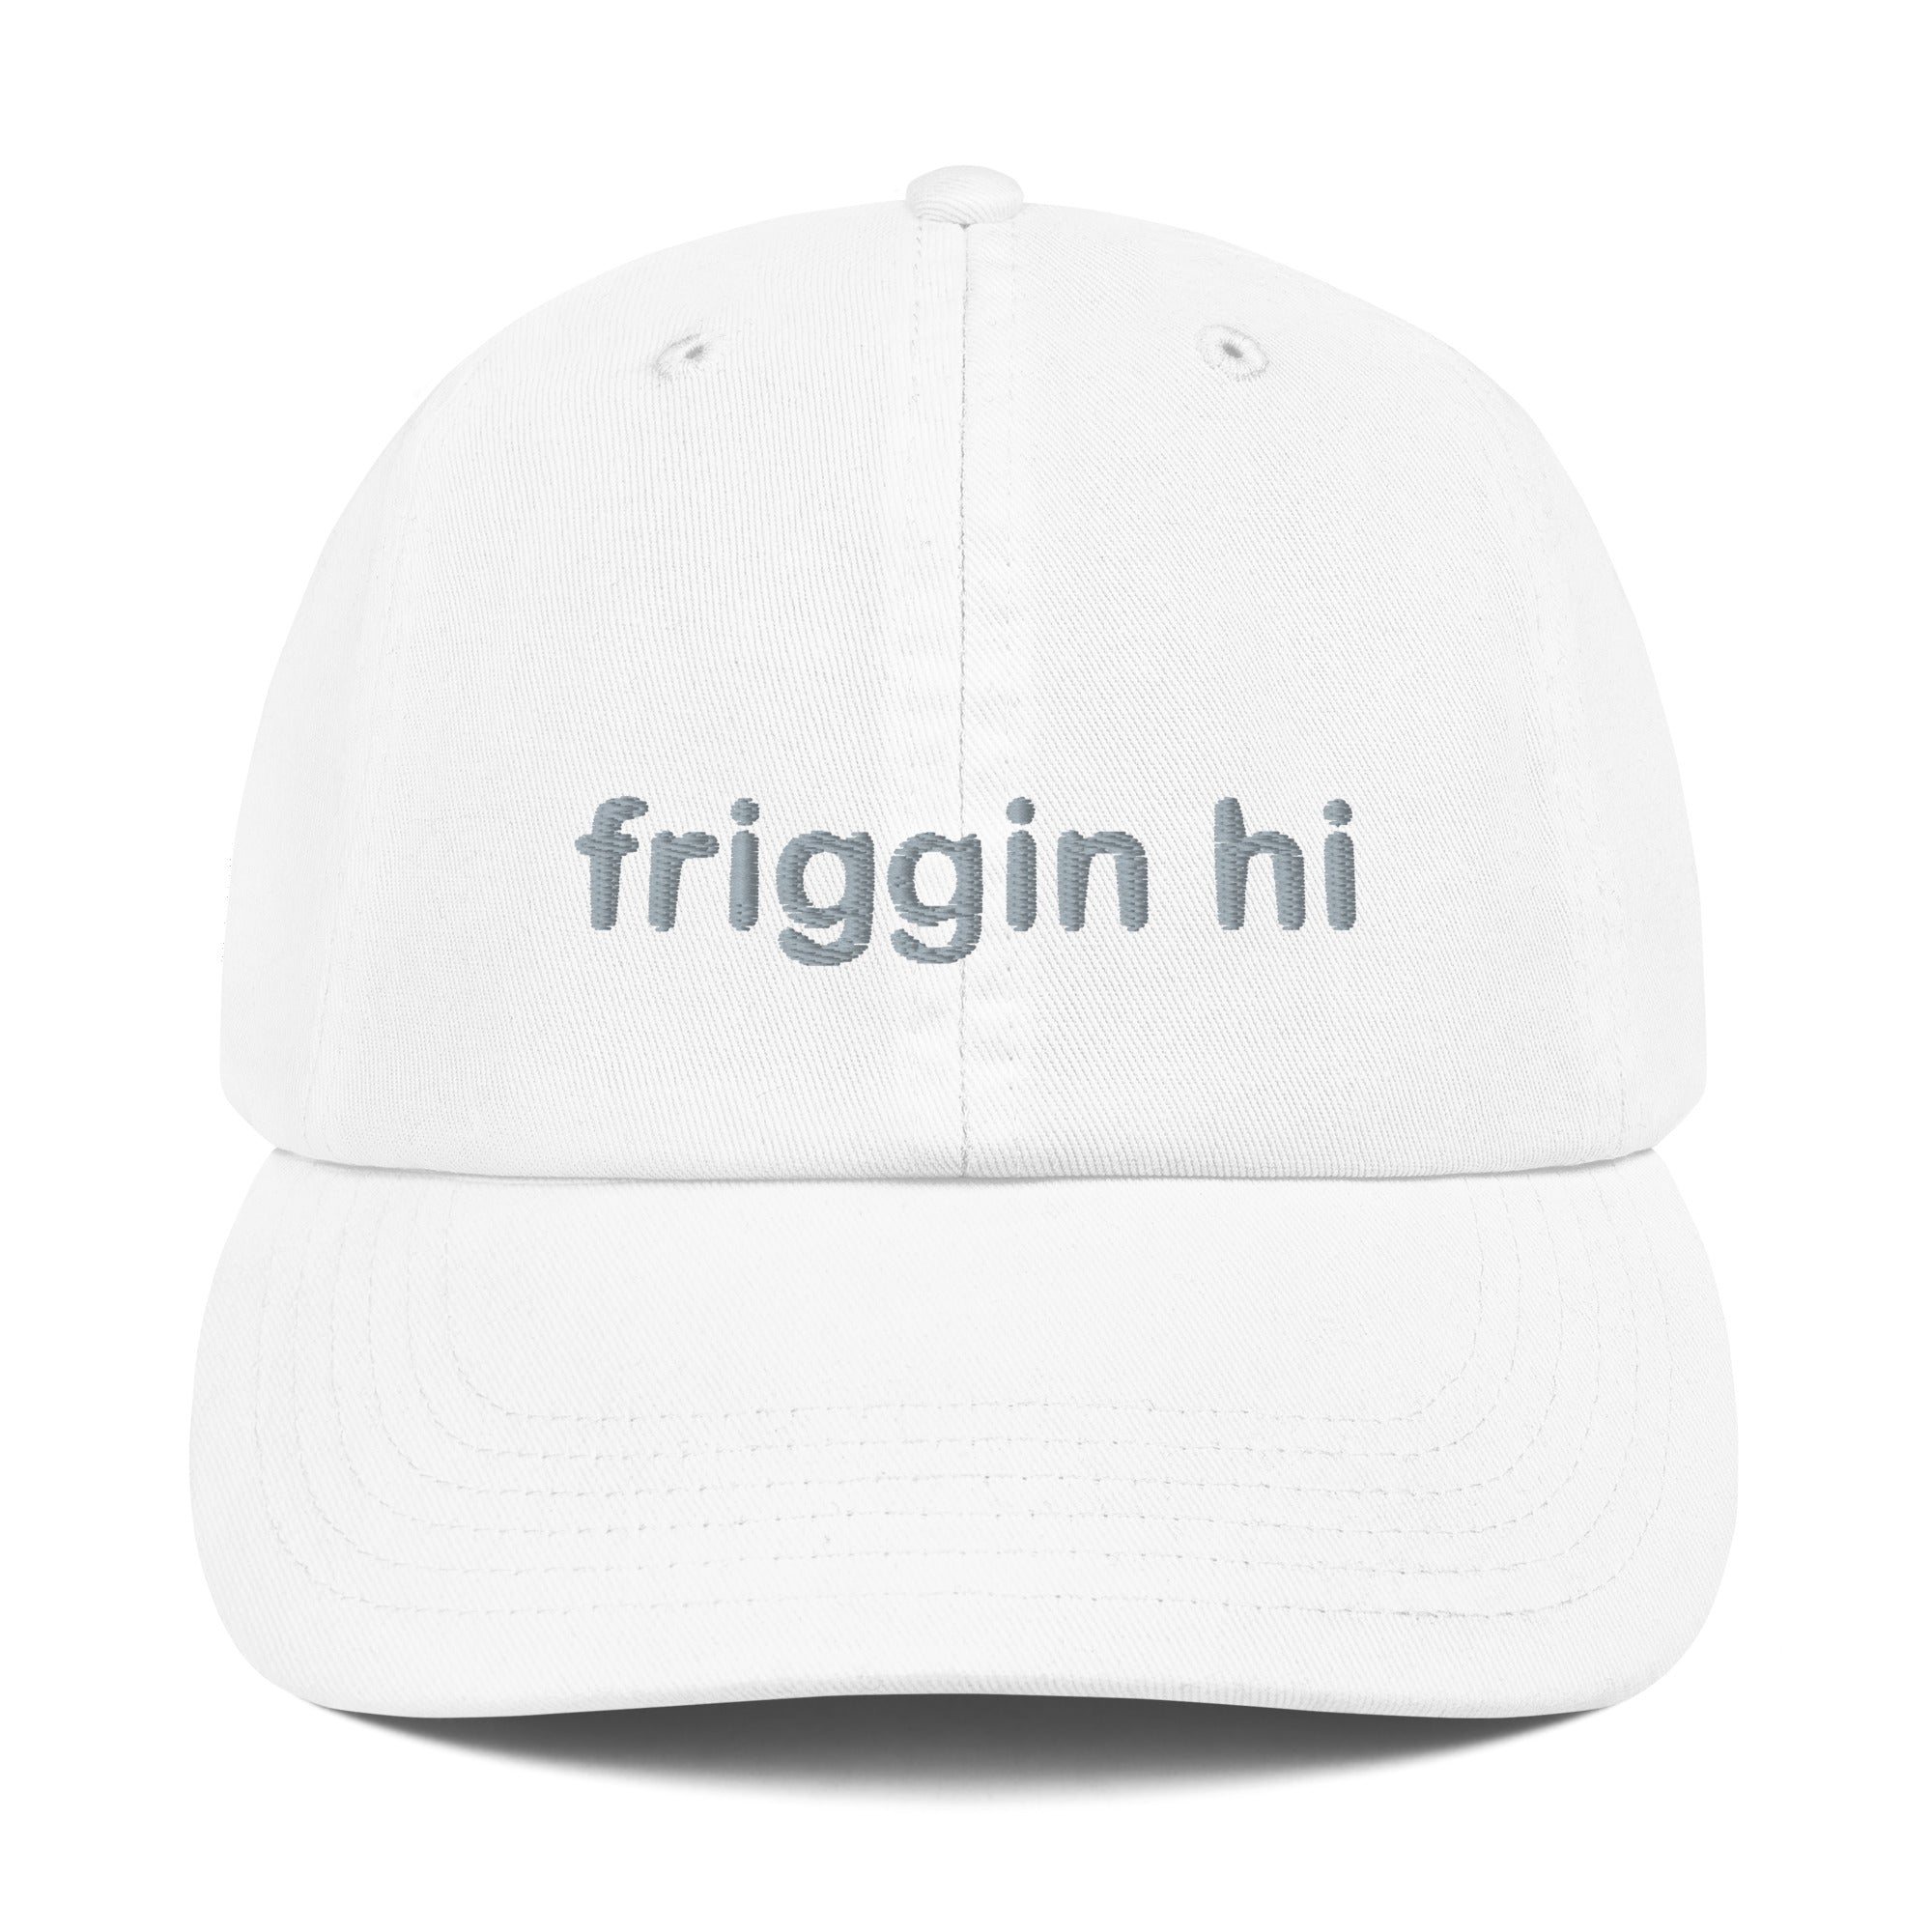 "Friggin Hi, Friggin Bye" Adult Champion Dad Cap